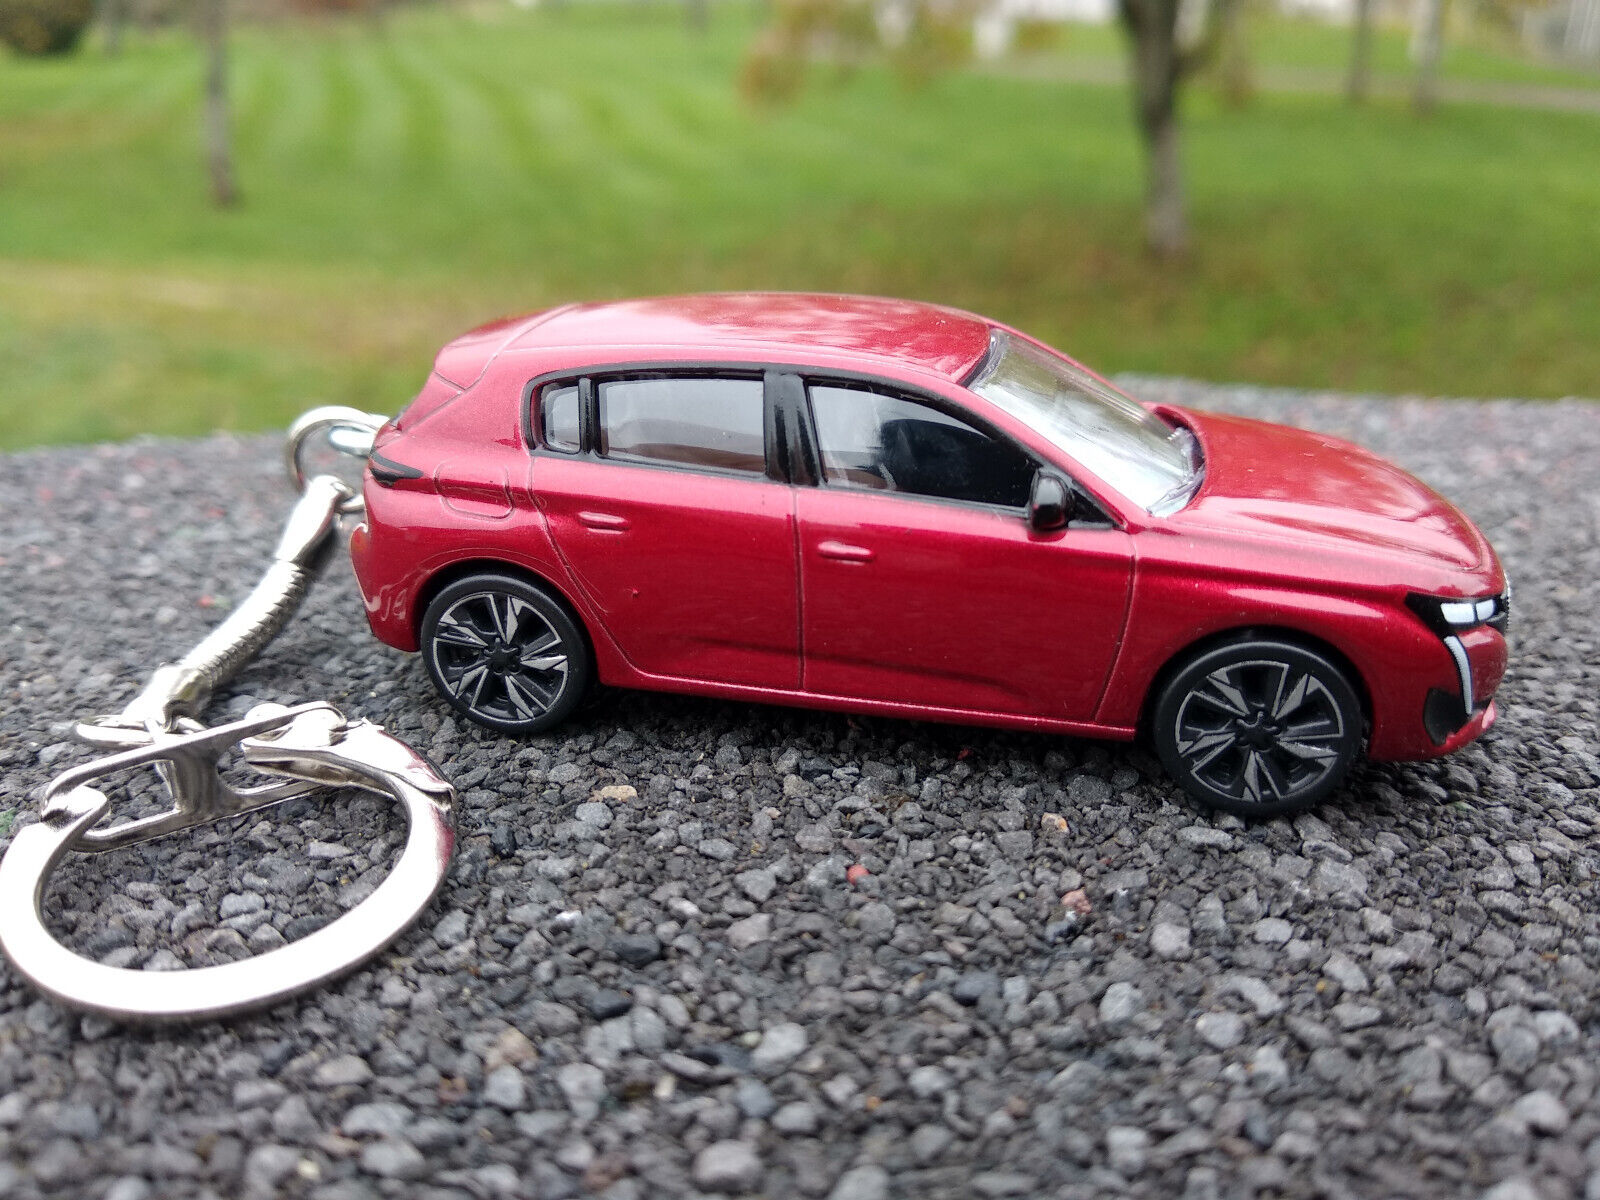 Porte clé Peugeot 308 rouge, en métal,neuf, idée cadeau sympa • Ateepique